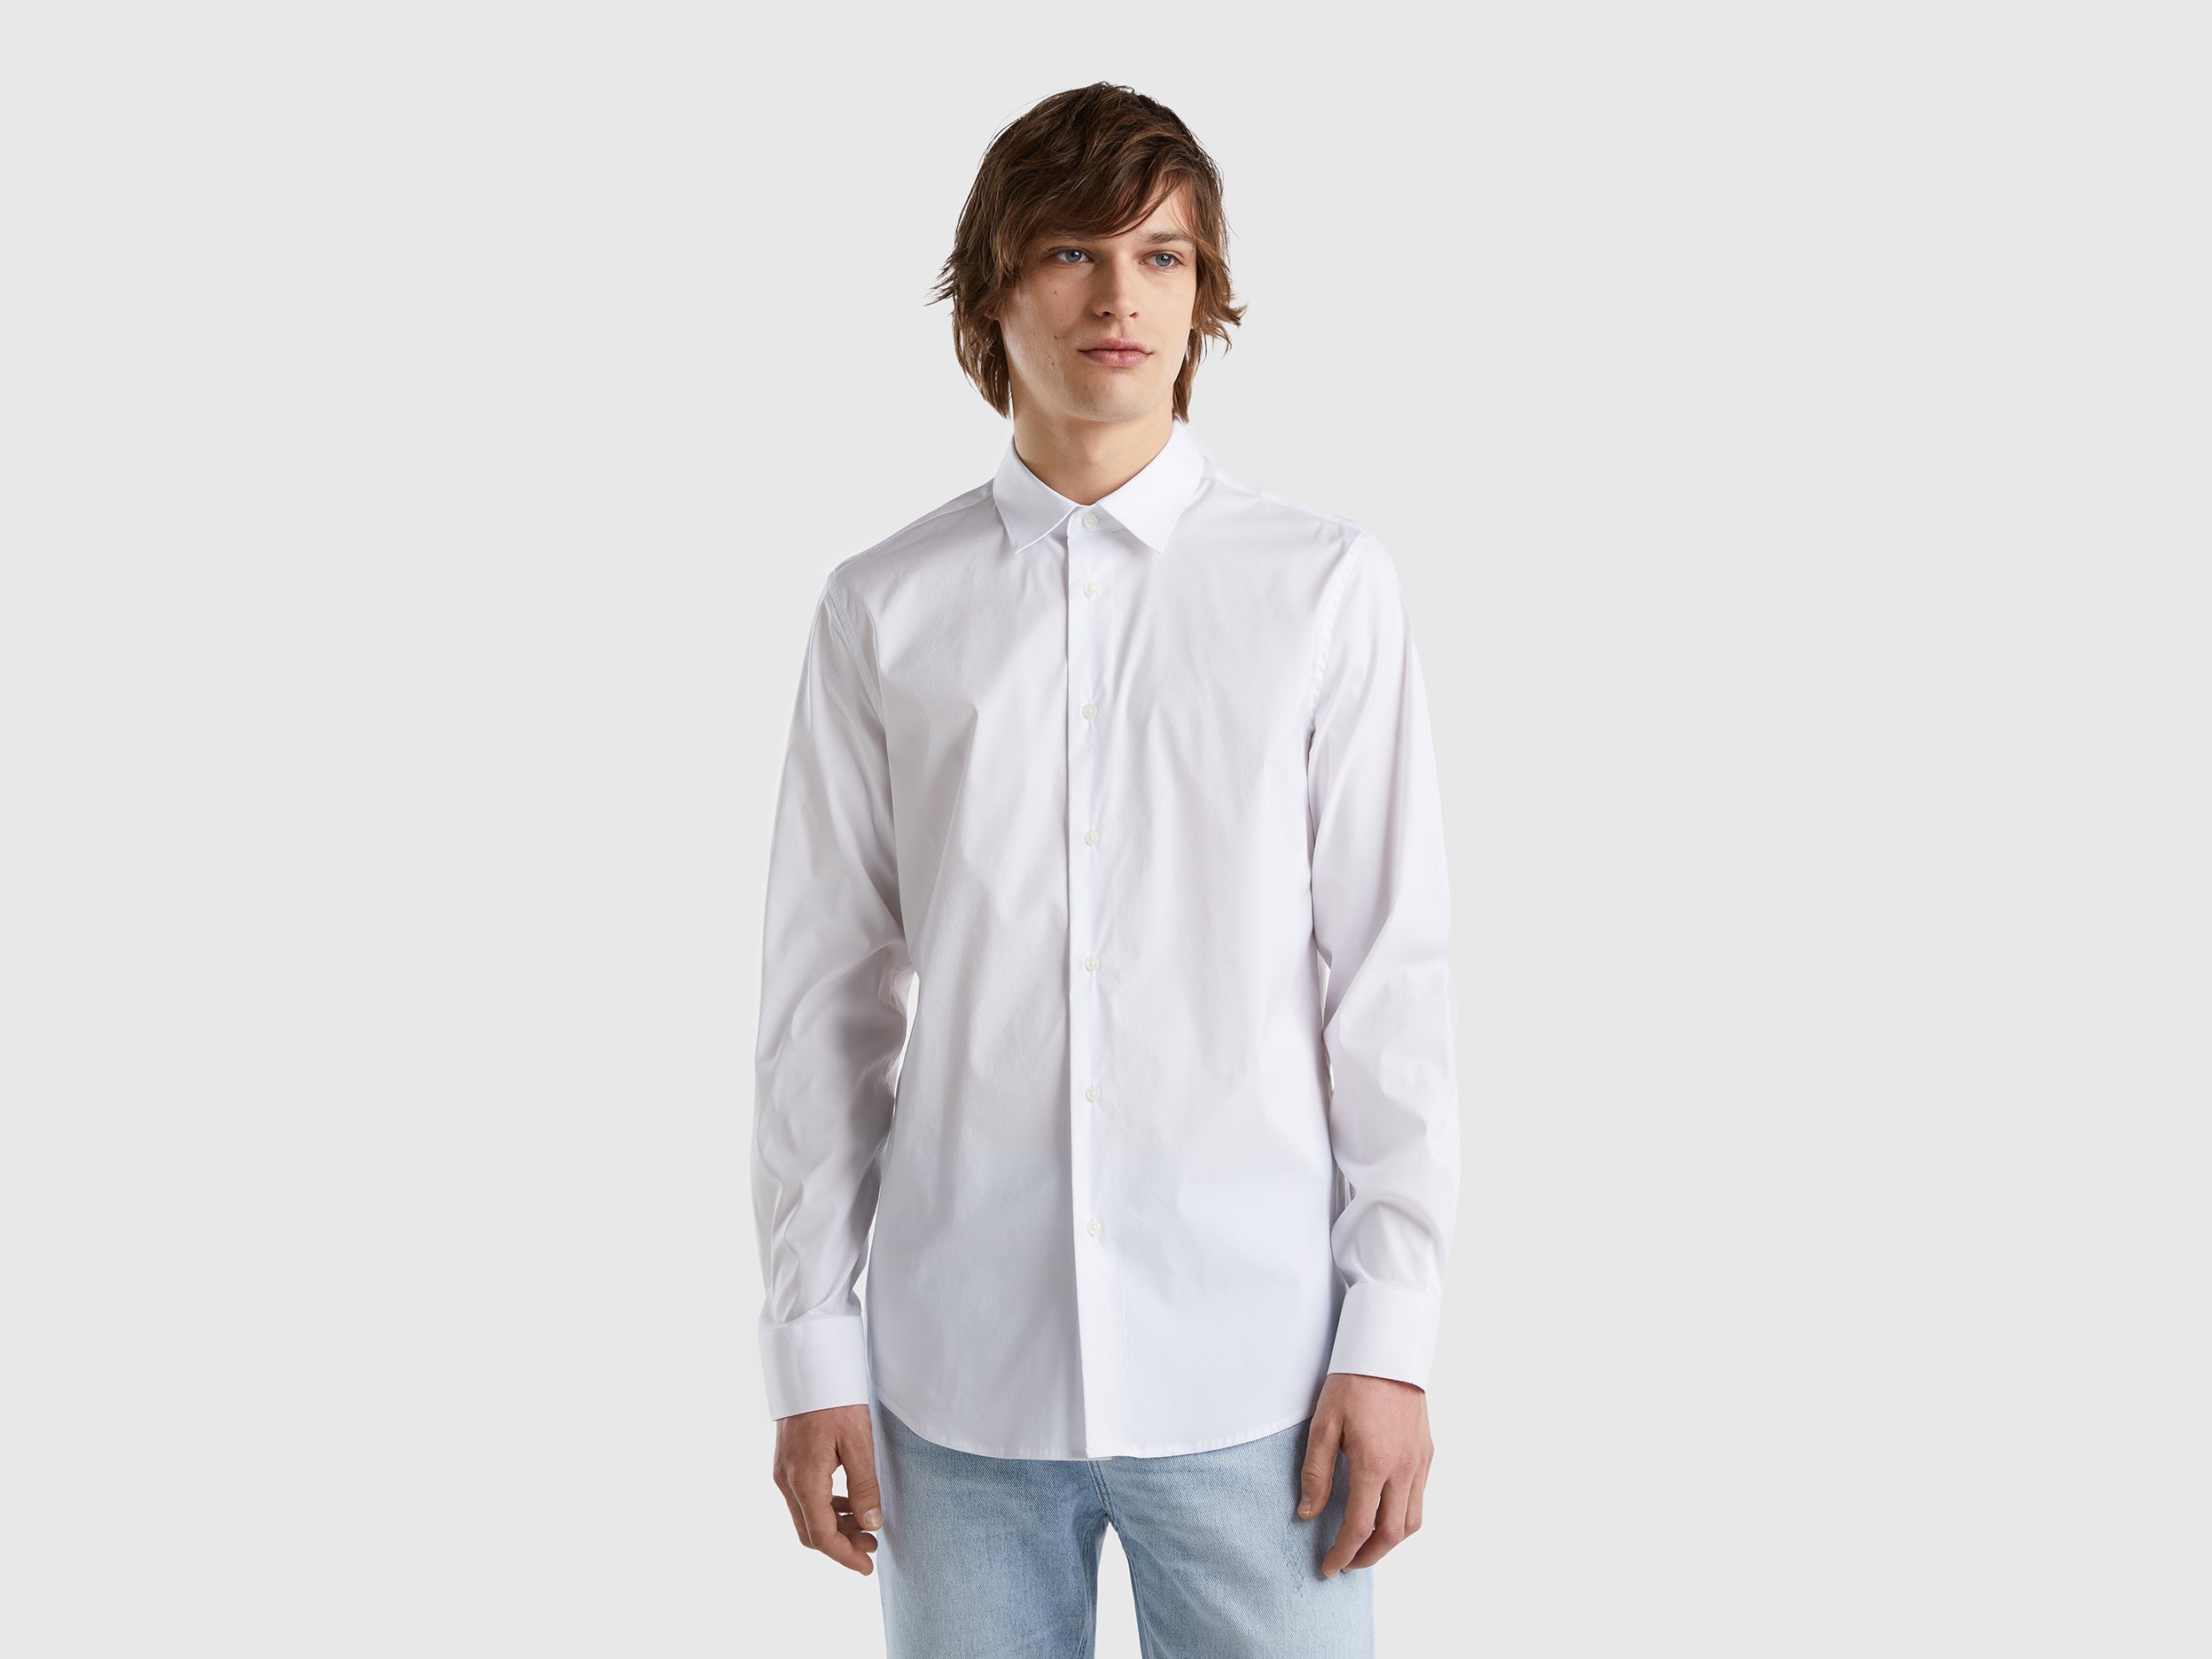 Benetton, Solid Color Slim Fit Shirt, size XXL, White, Men